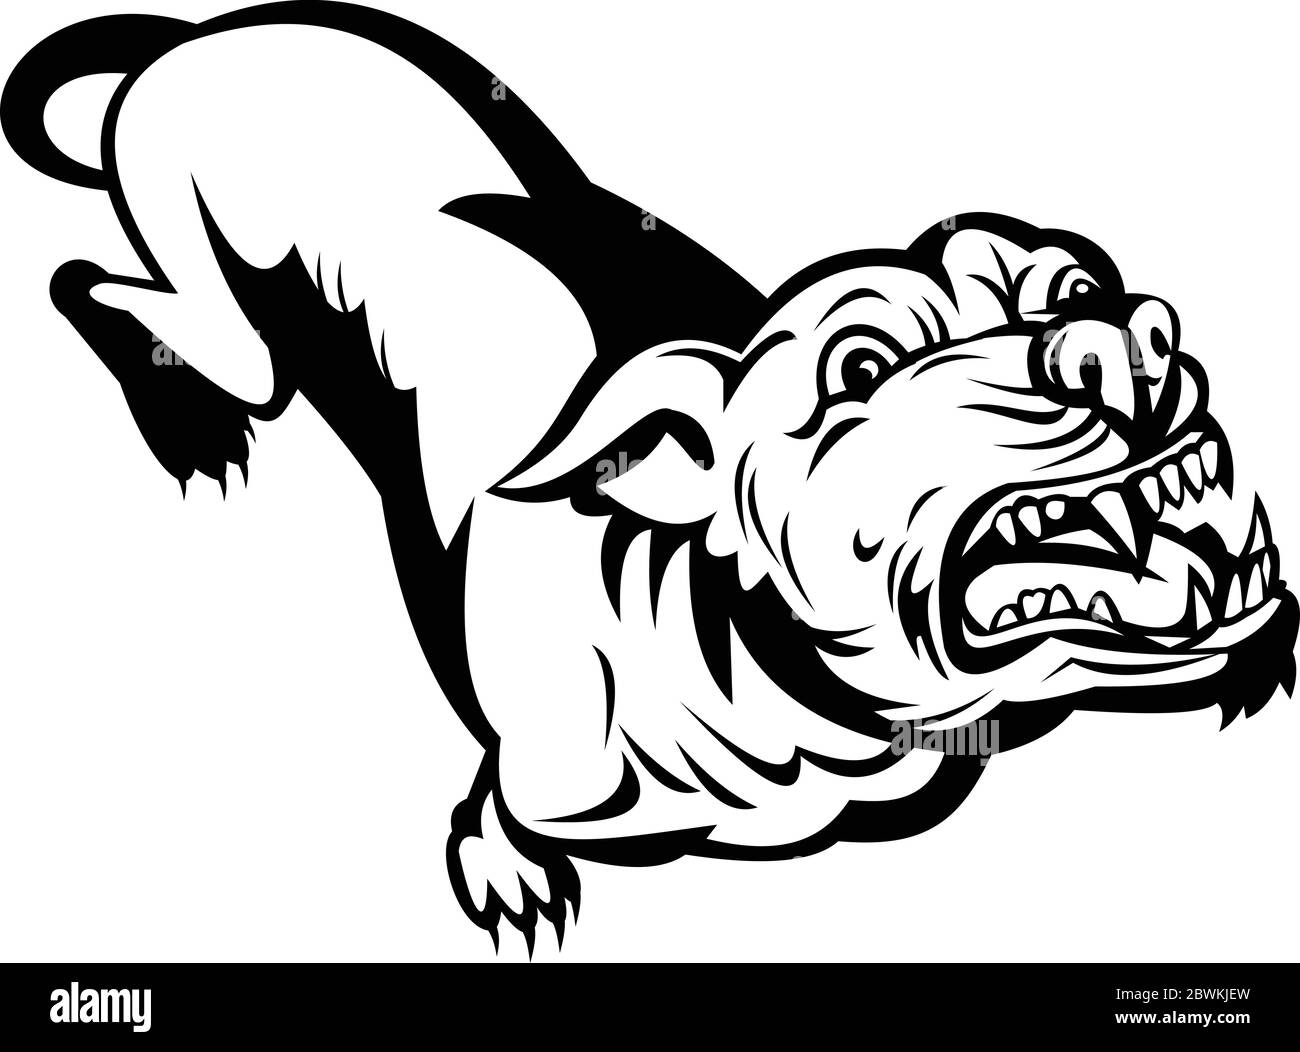 Illustration de style rétro d'un Pit taureau ou pitbull, nom commun pour un type de chien descendu de buldogs et de terriers, en colère et aboyant sur isolé Illustration de Vecteur